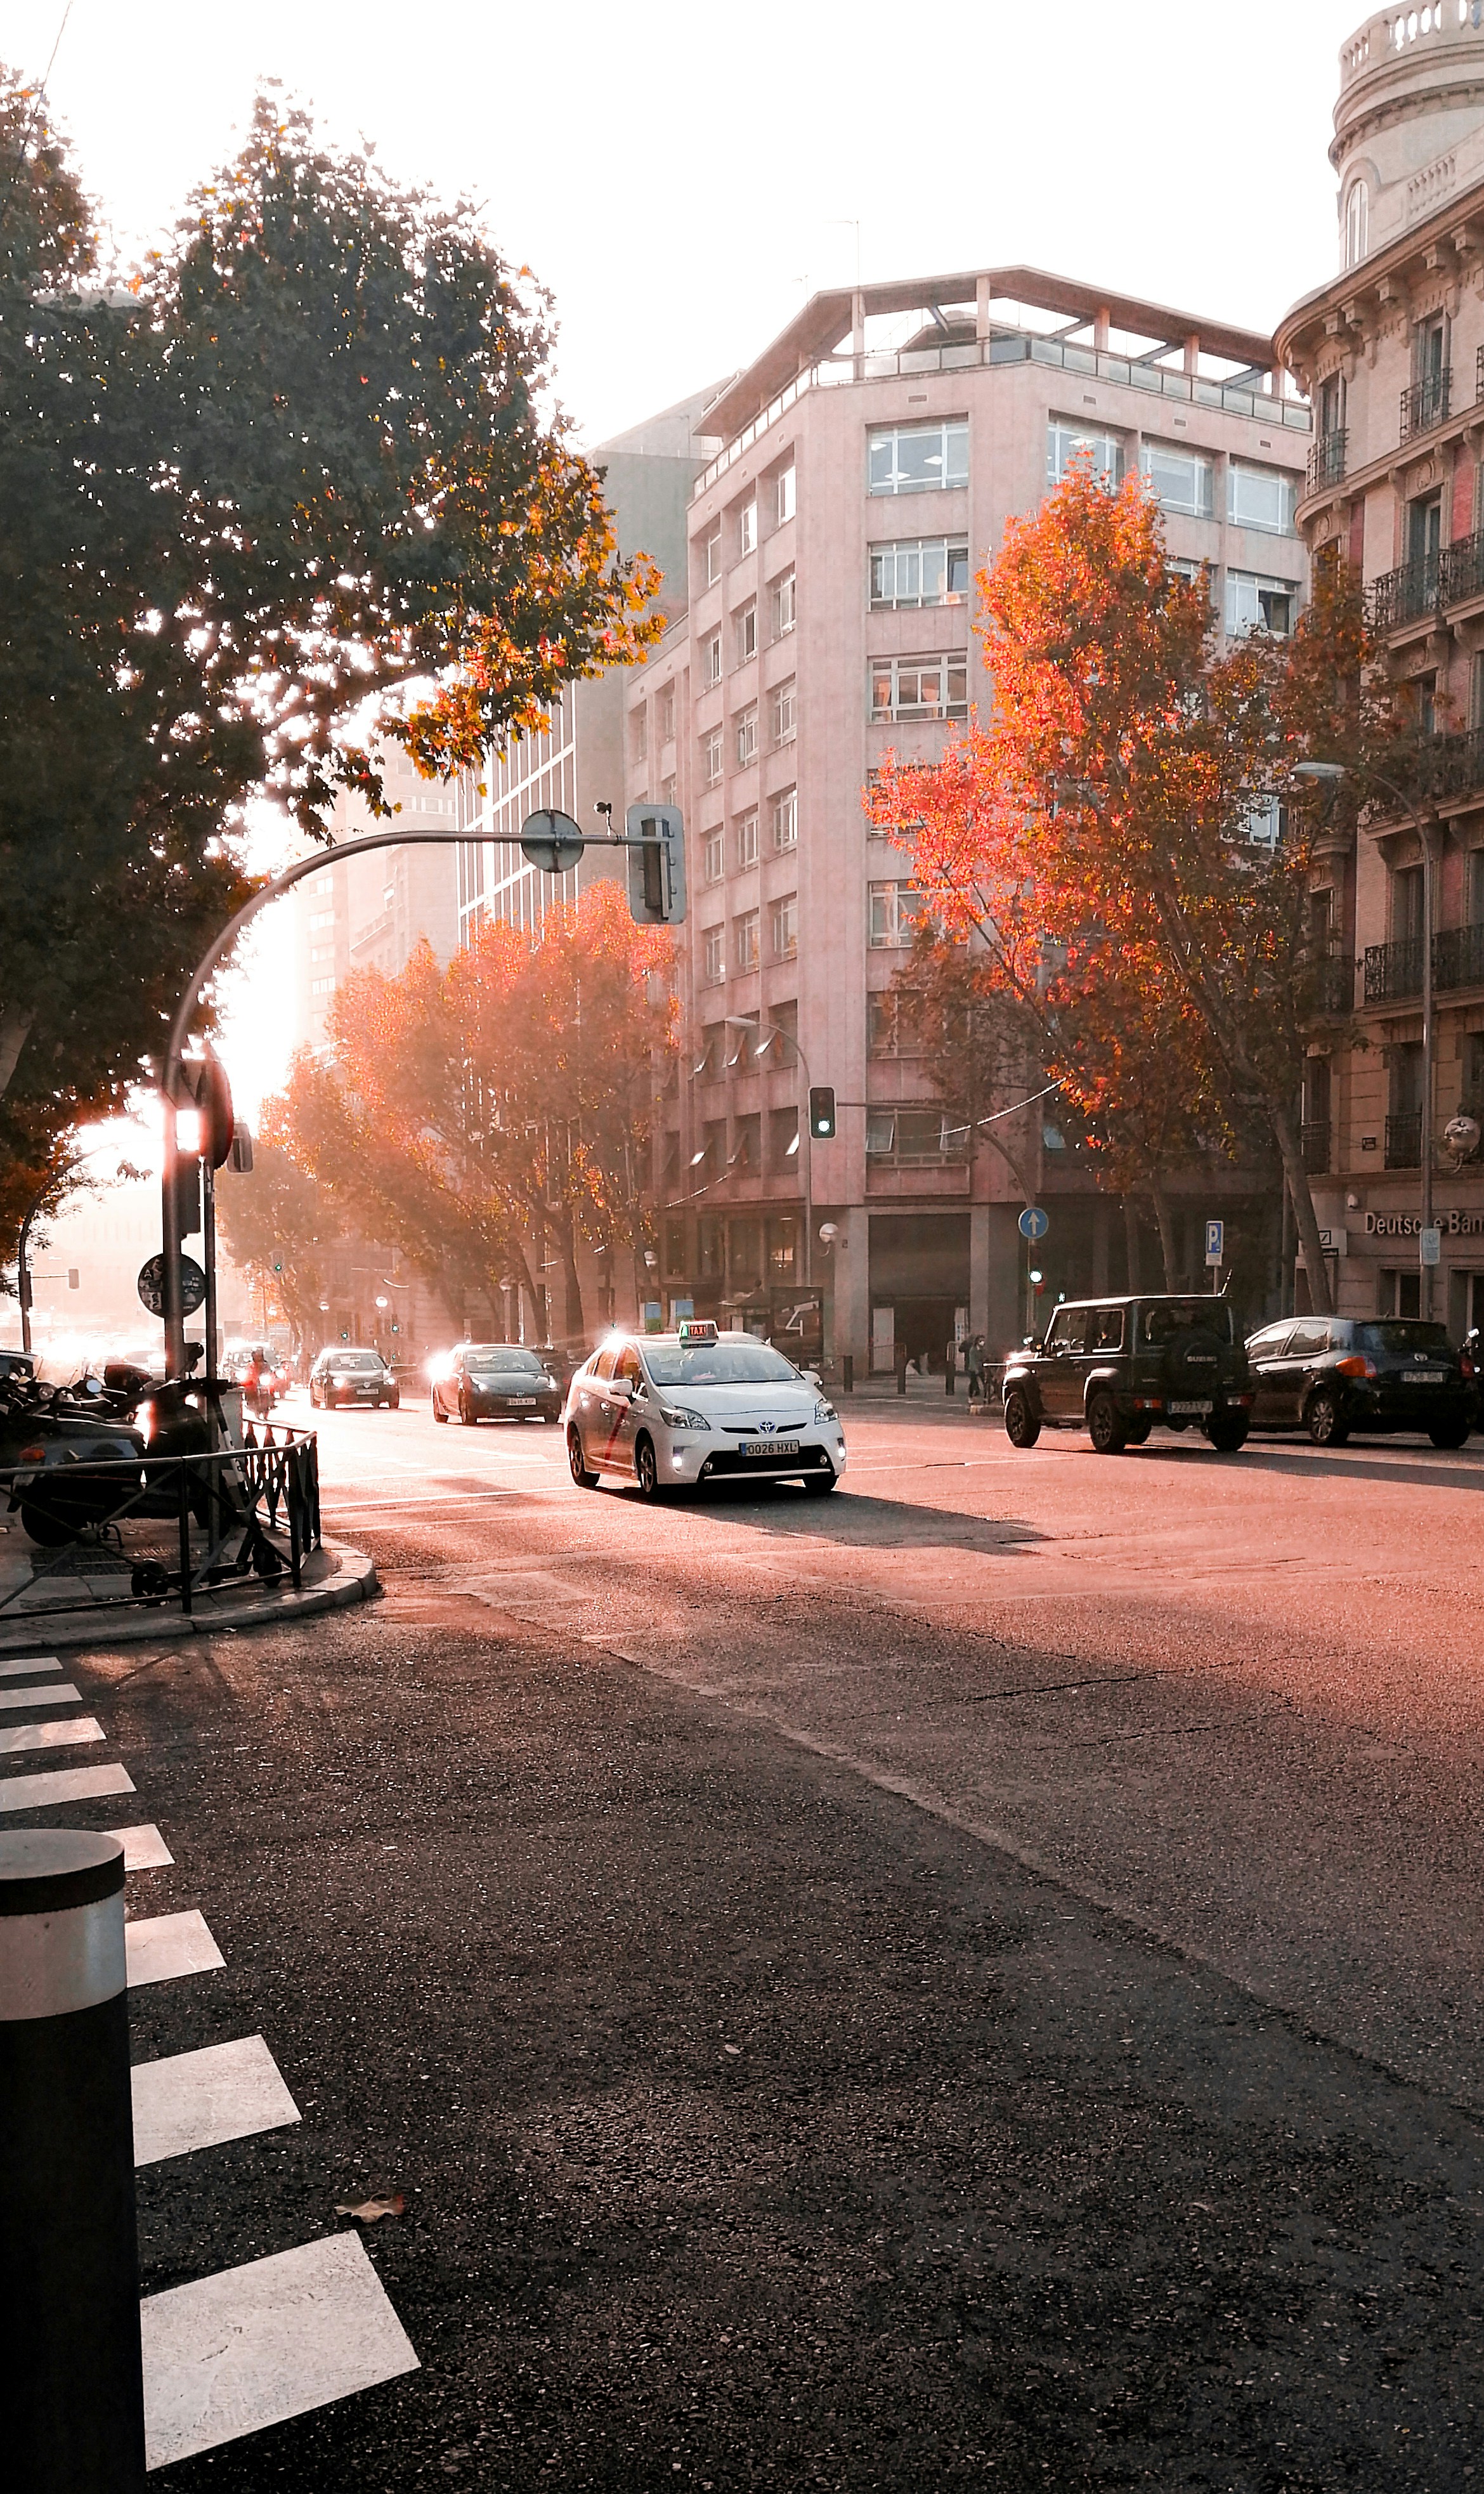 Amanecer con tráfico en la ciudad. Madrid rezuma otoño por todos sus poros.